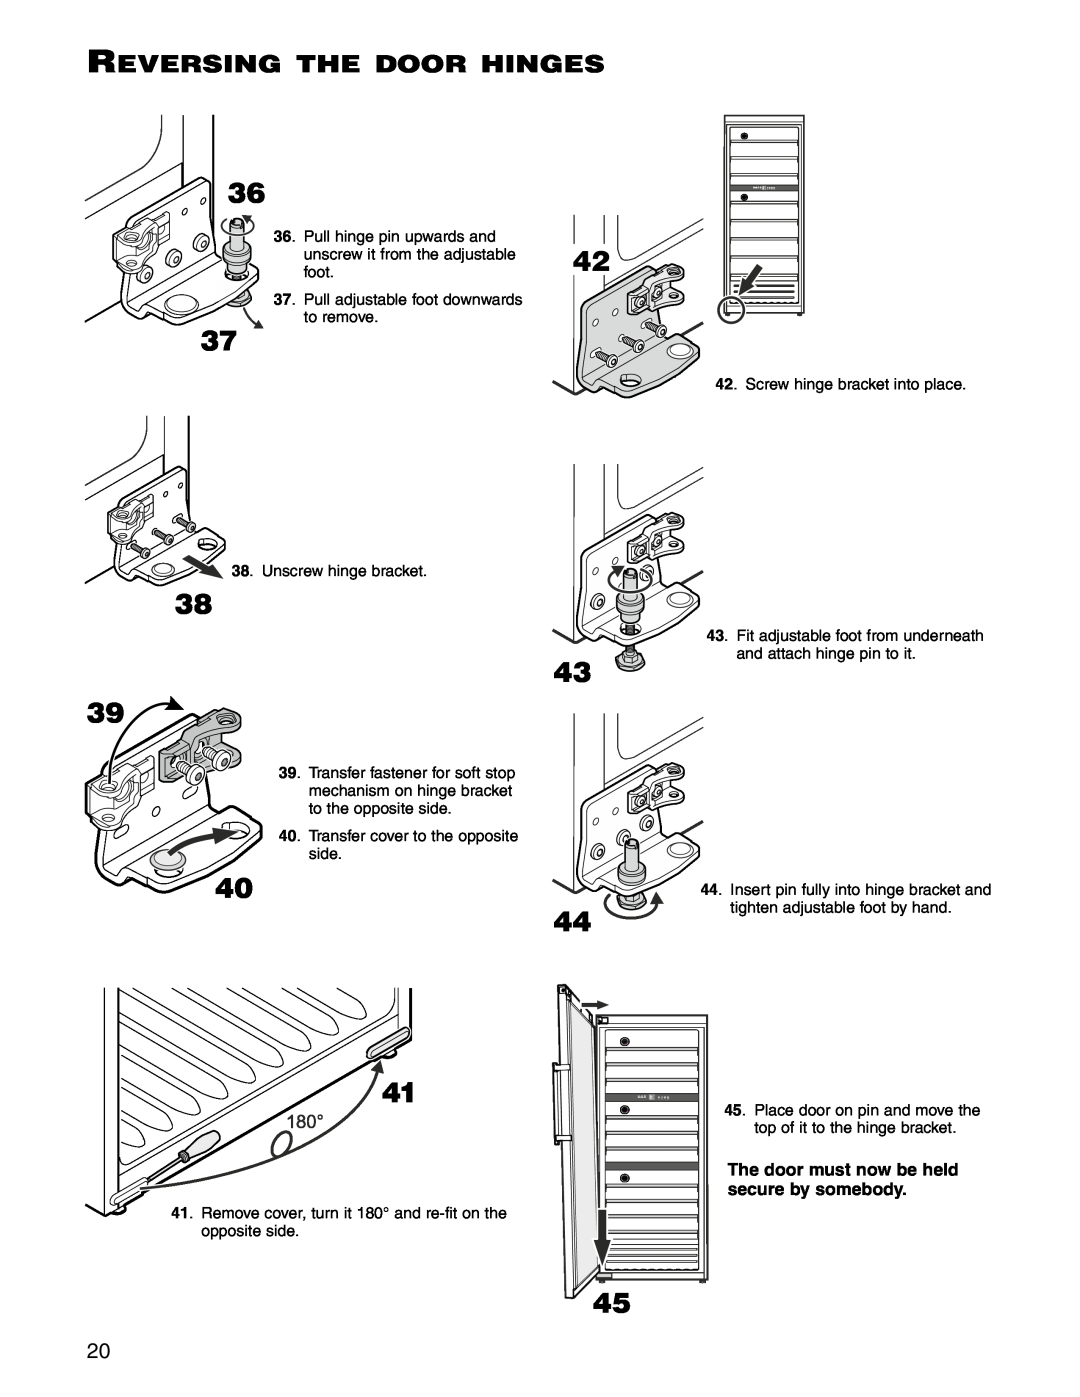 Liebherr WS 17800 manual Reversing the door hinges, Unscrew hinge bracket, Screw hinge bracket into place 